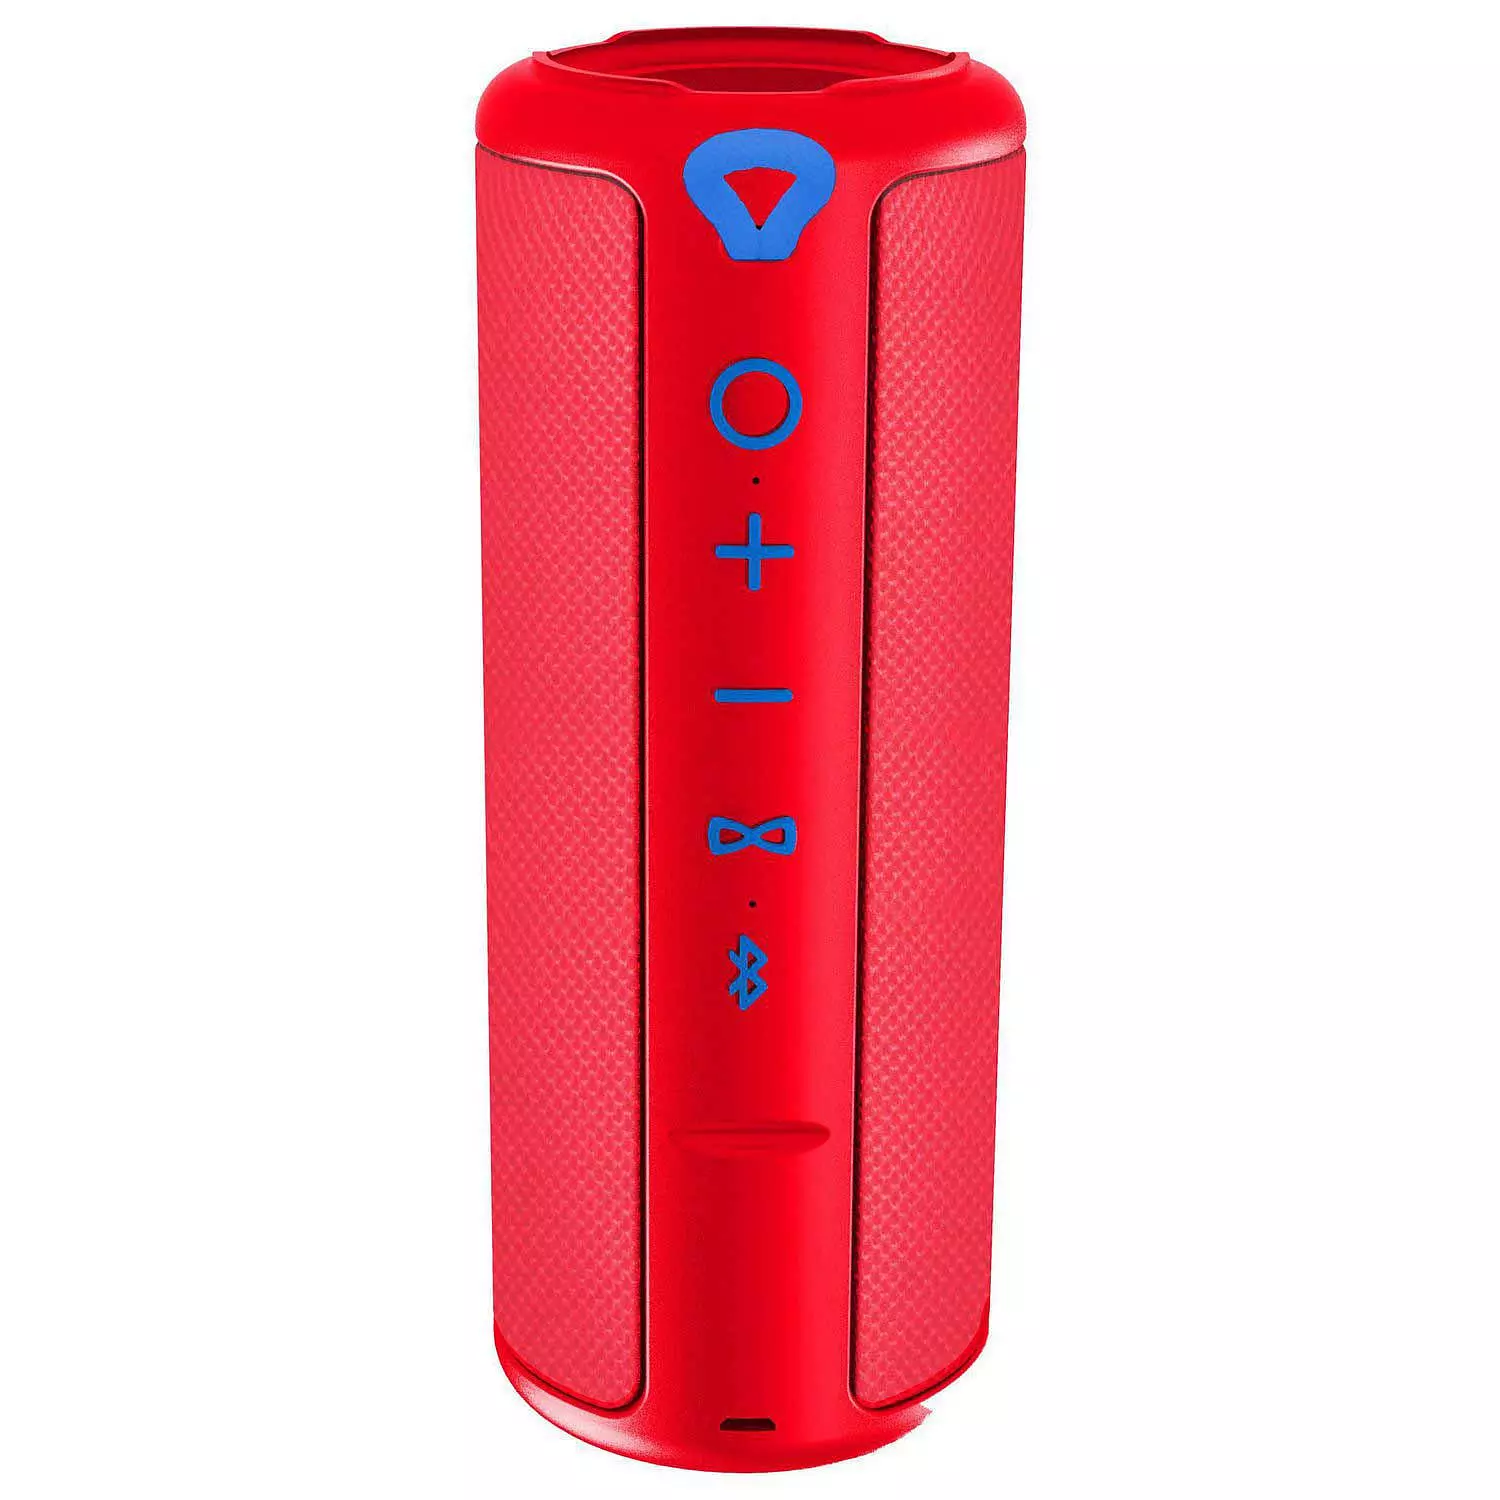 Sylvania - Haut-parleur Bluetooth étanche au fini caoutchouc avec garniture en tissu, rouge